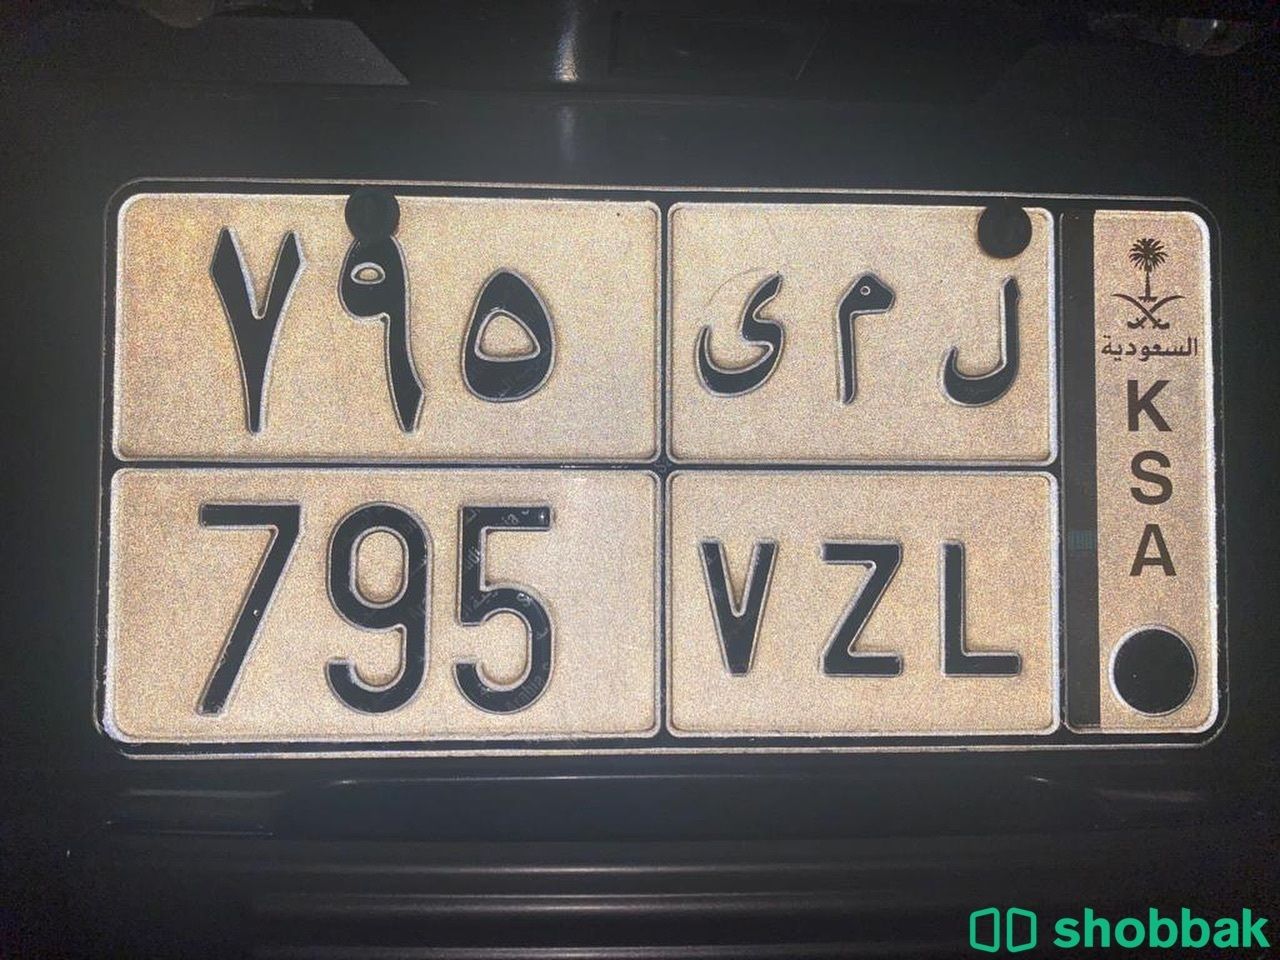 لوحة سيارة ل م ى Shobbak Saudi Arabia